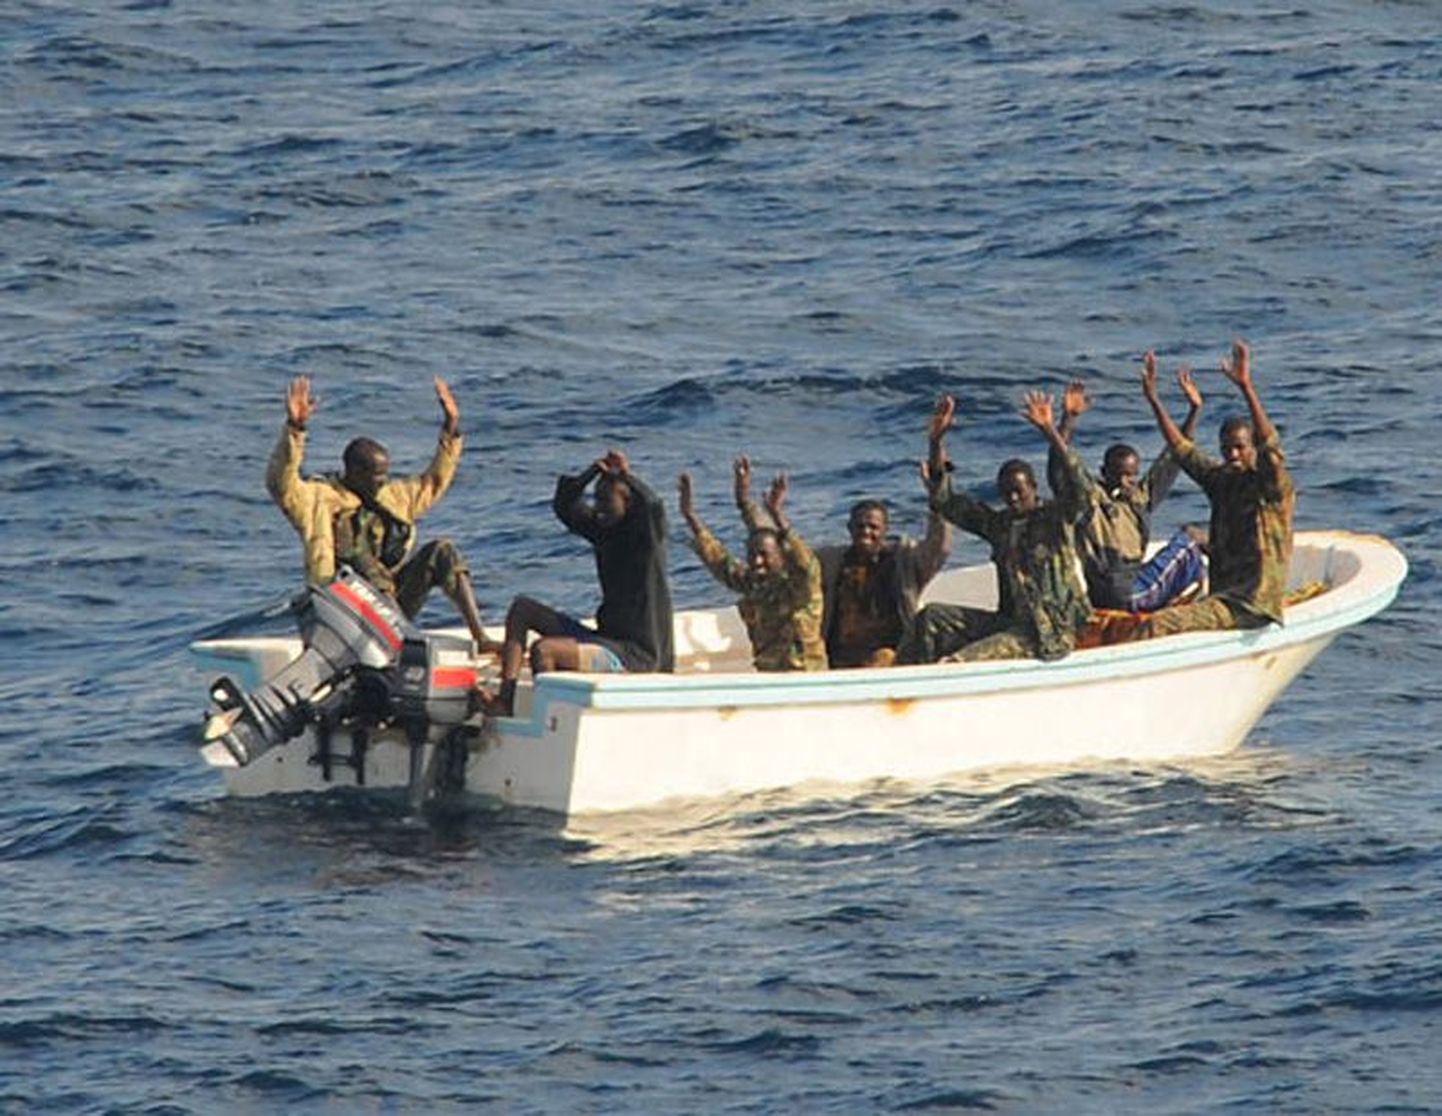 Somaalia piraadid on enamasti tavalised kohalikud vaesed talupojad, kes lastagi ei oska.